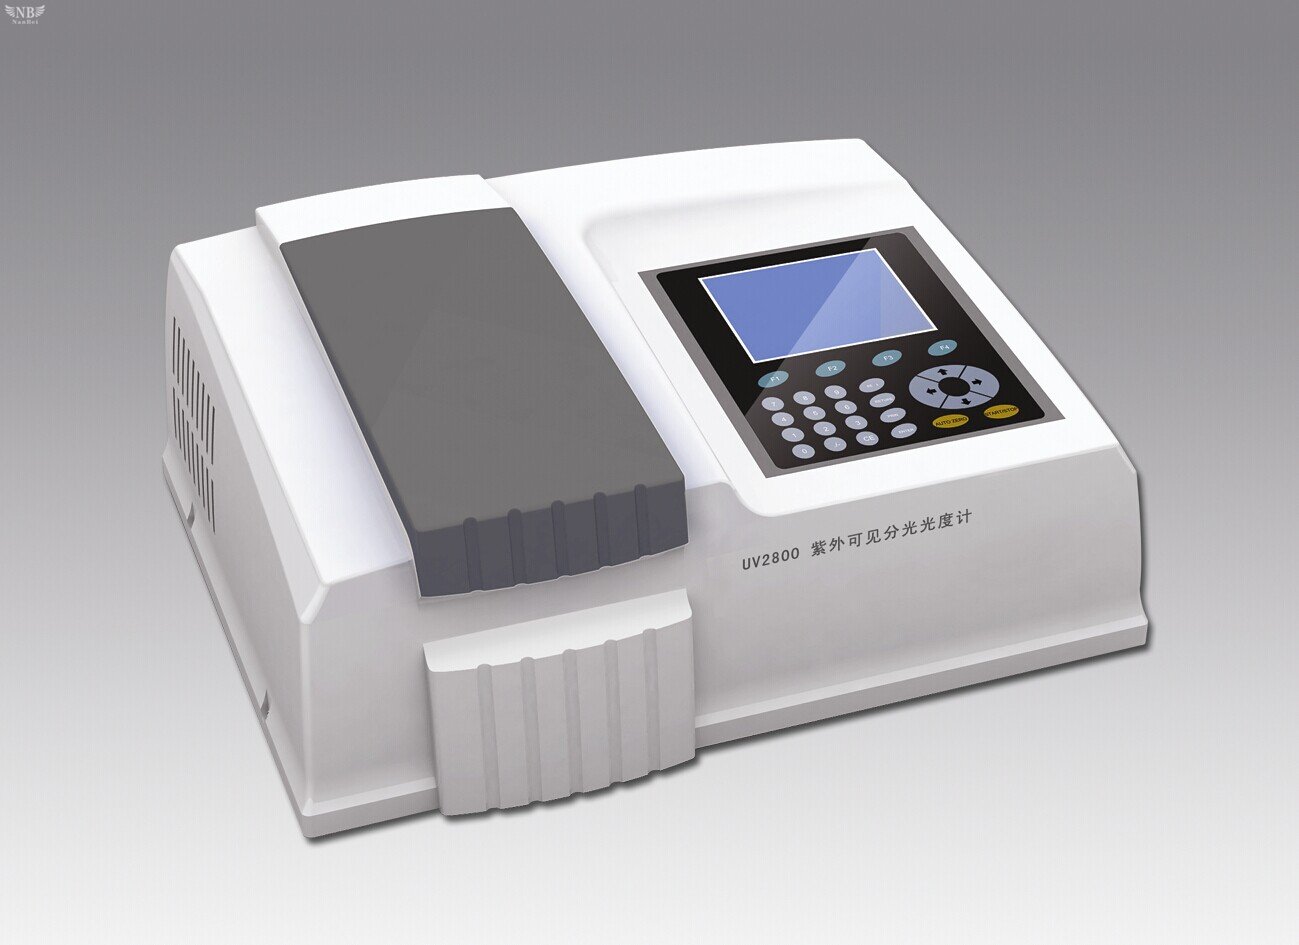 UV2800 UV-VIS Double Beam Spectrophotometer